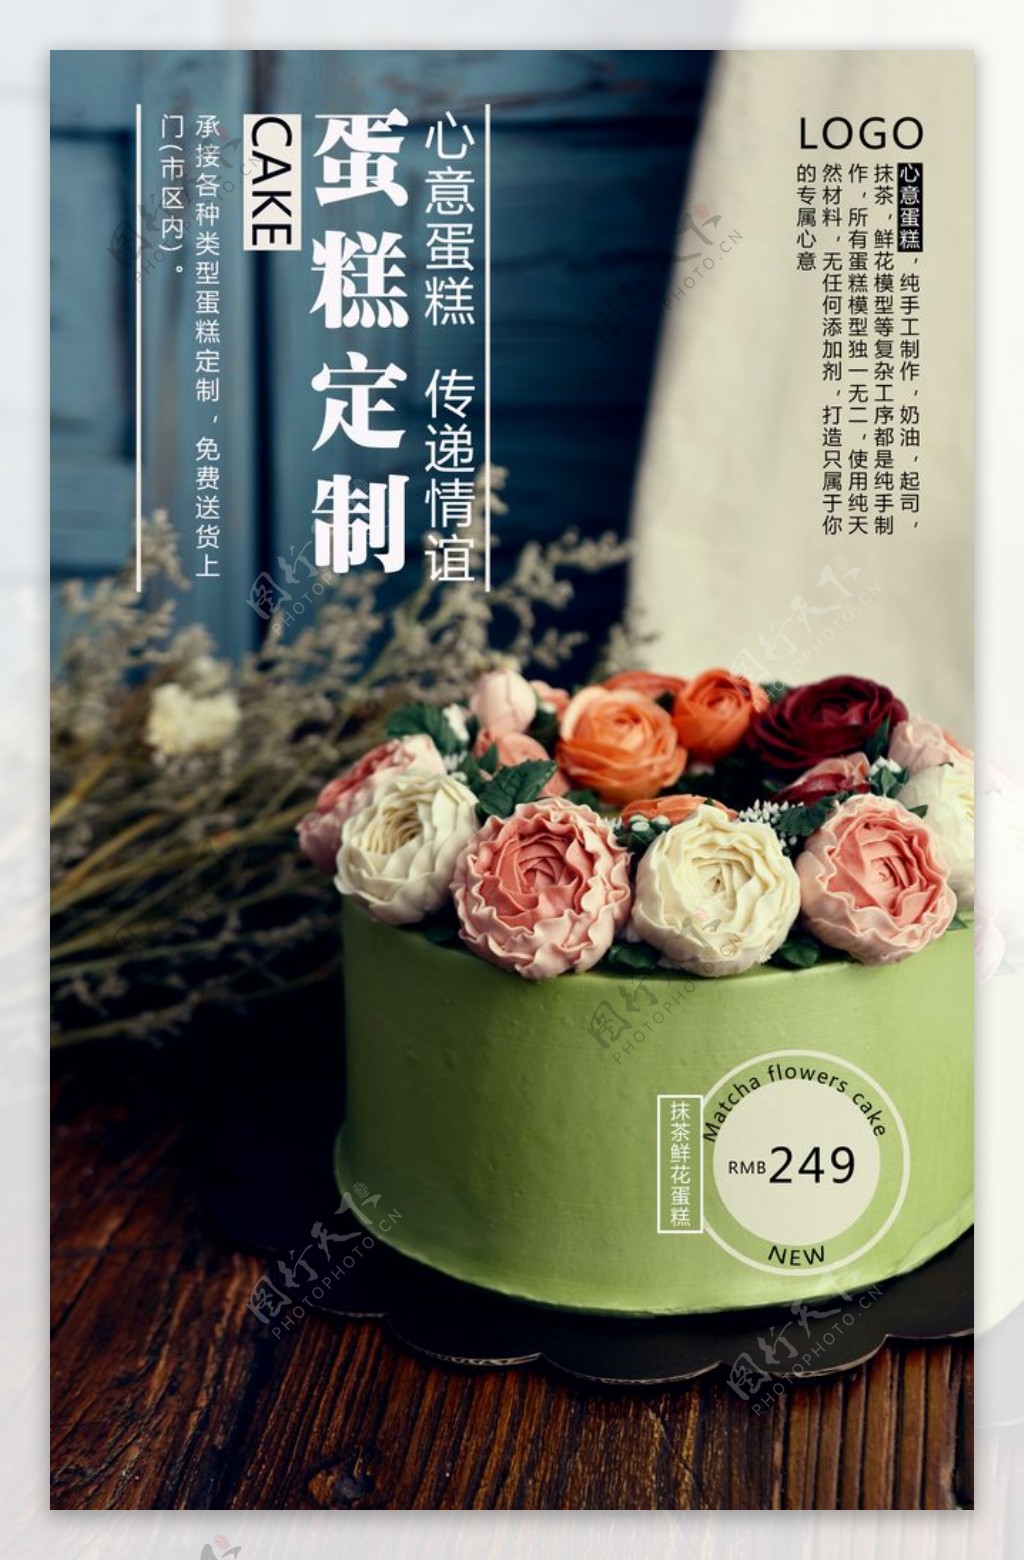 蛋糕定制美食食材活动海报素材